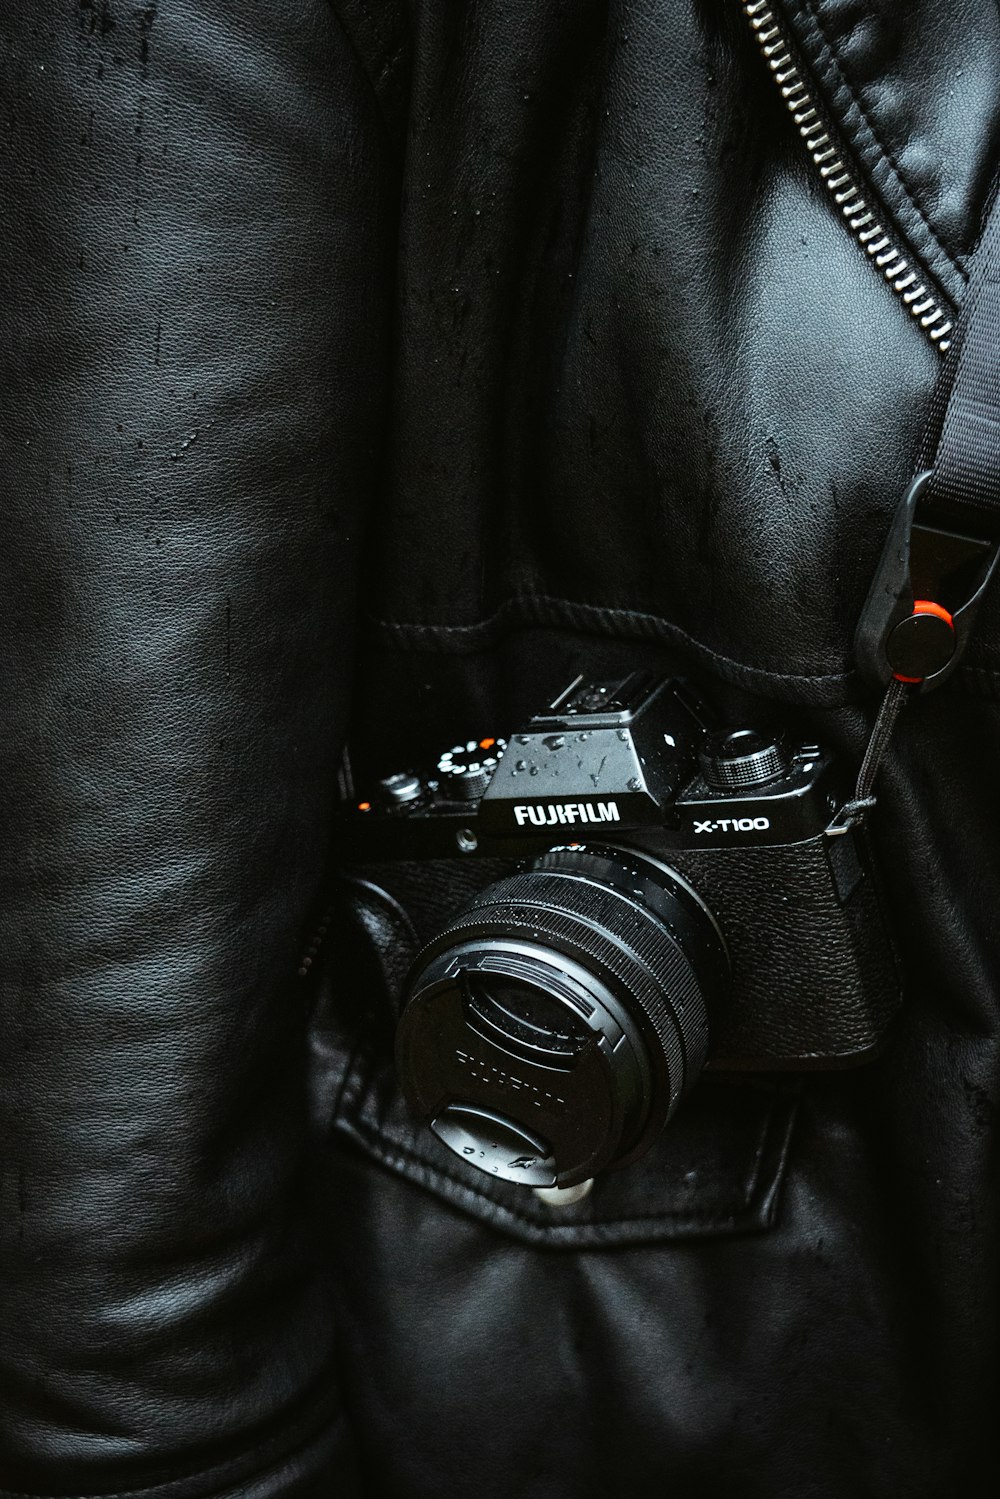 black nikon dslr camera on black leather textile